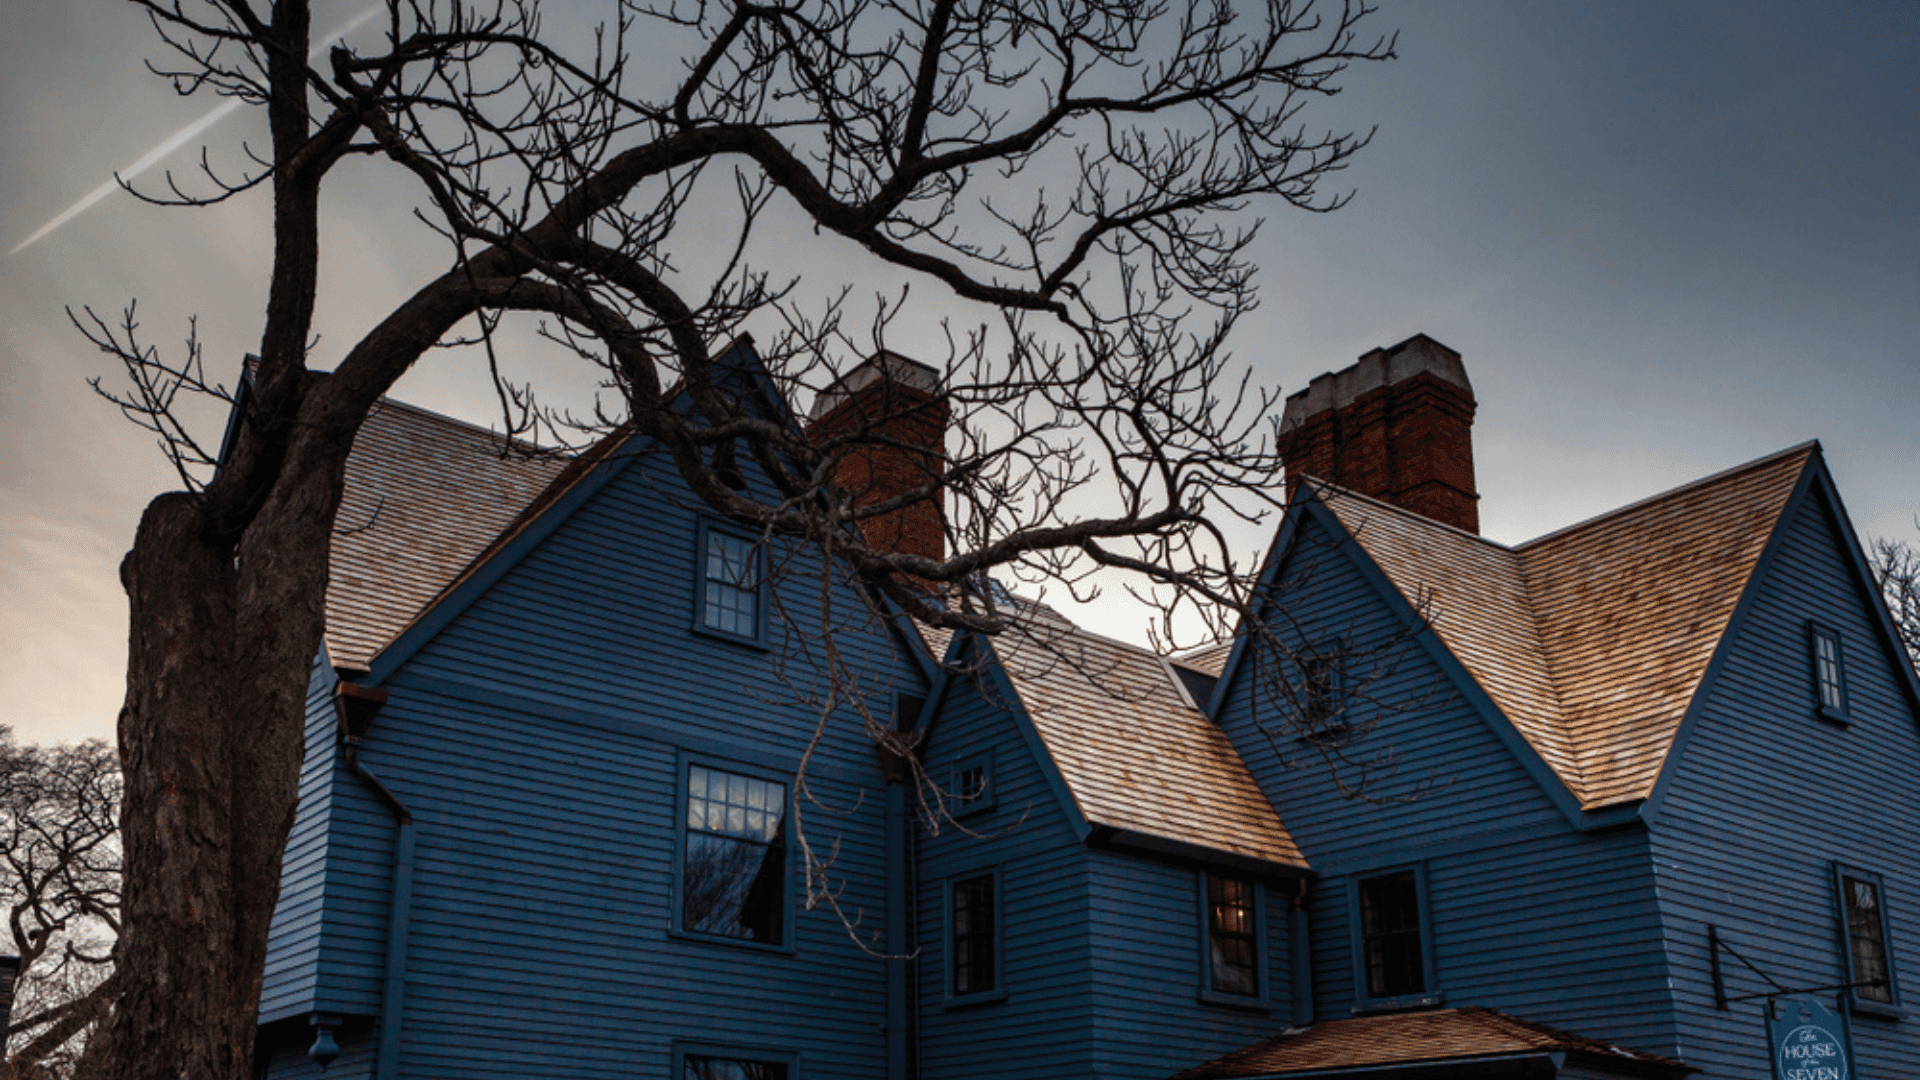 House of the Seven Gables, Salem, Massachusetts